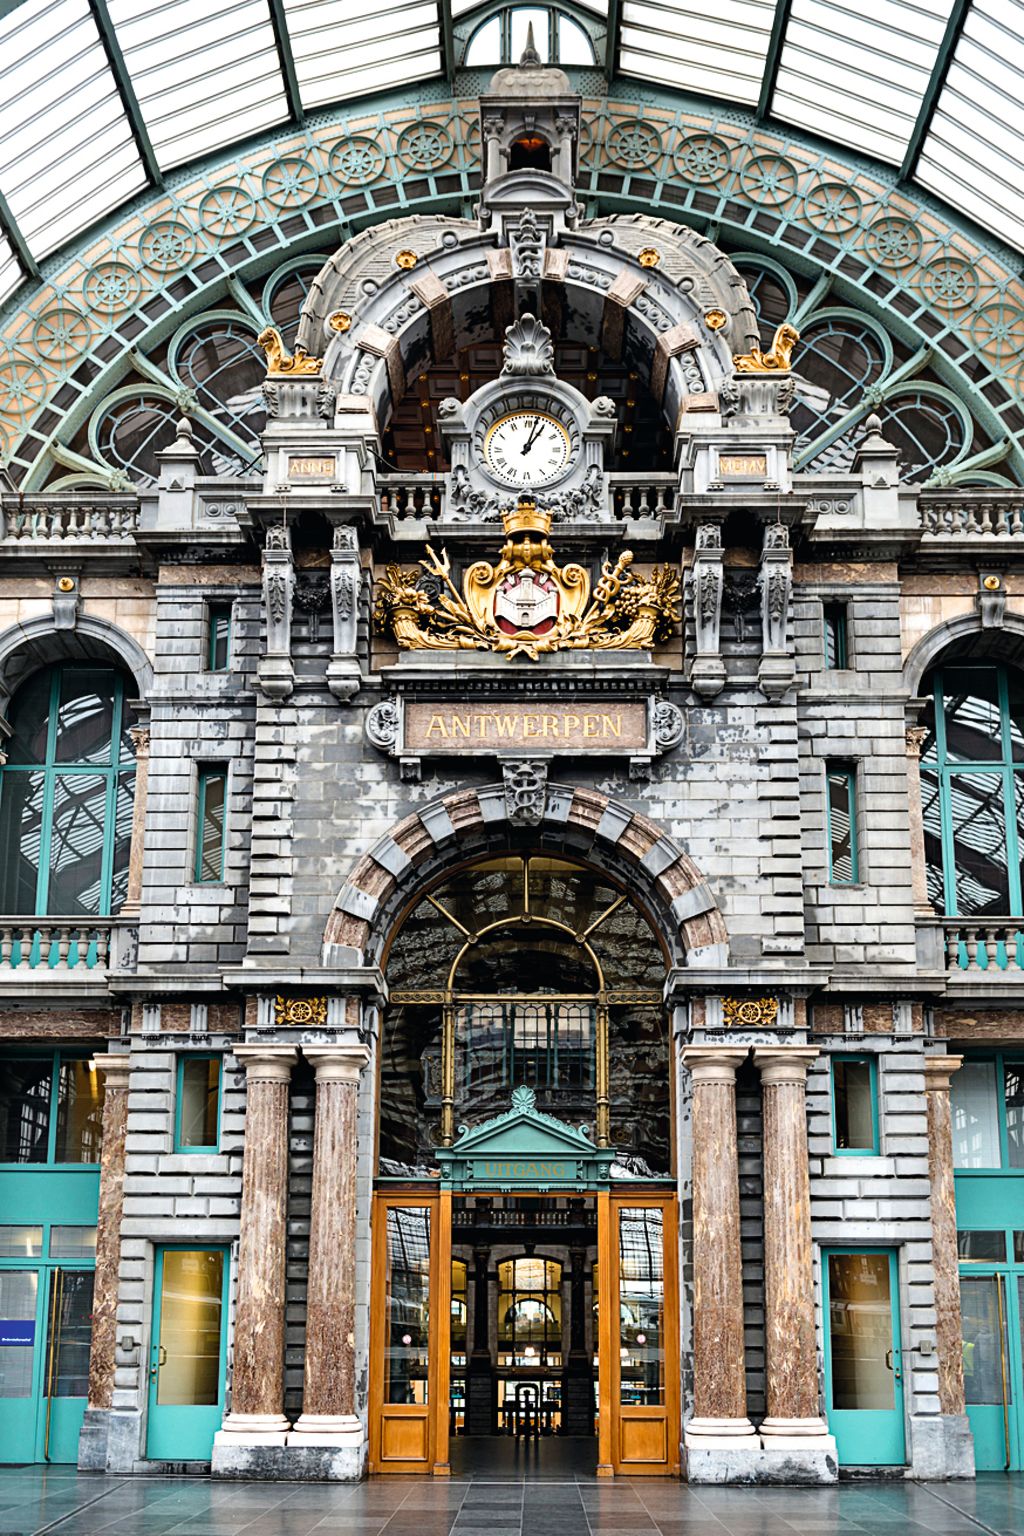 Interior of Antwerp central train station in Antwerp, Belgium Photo: Supplied.